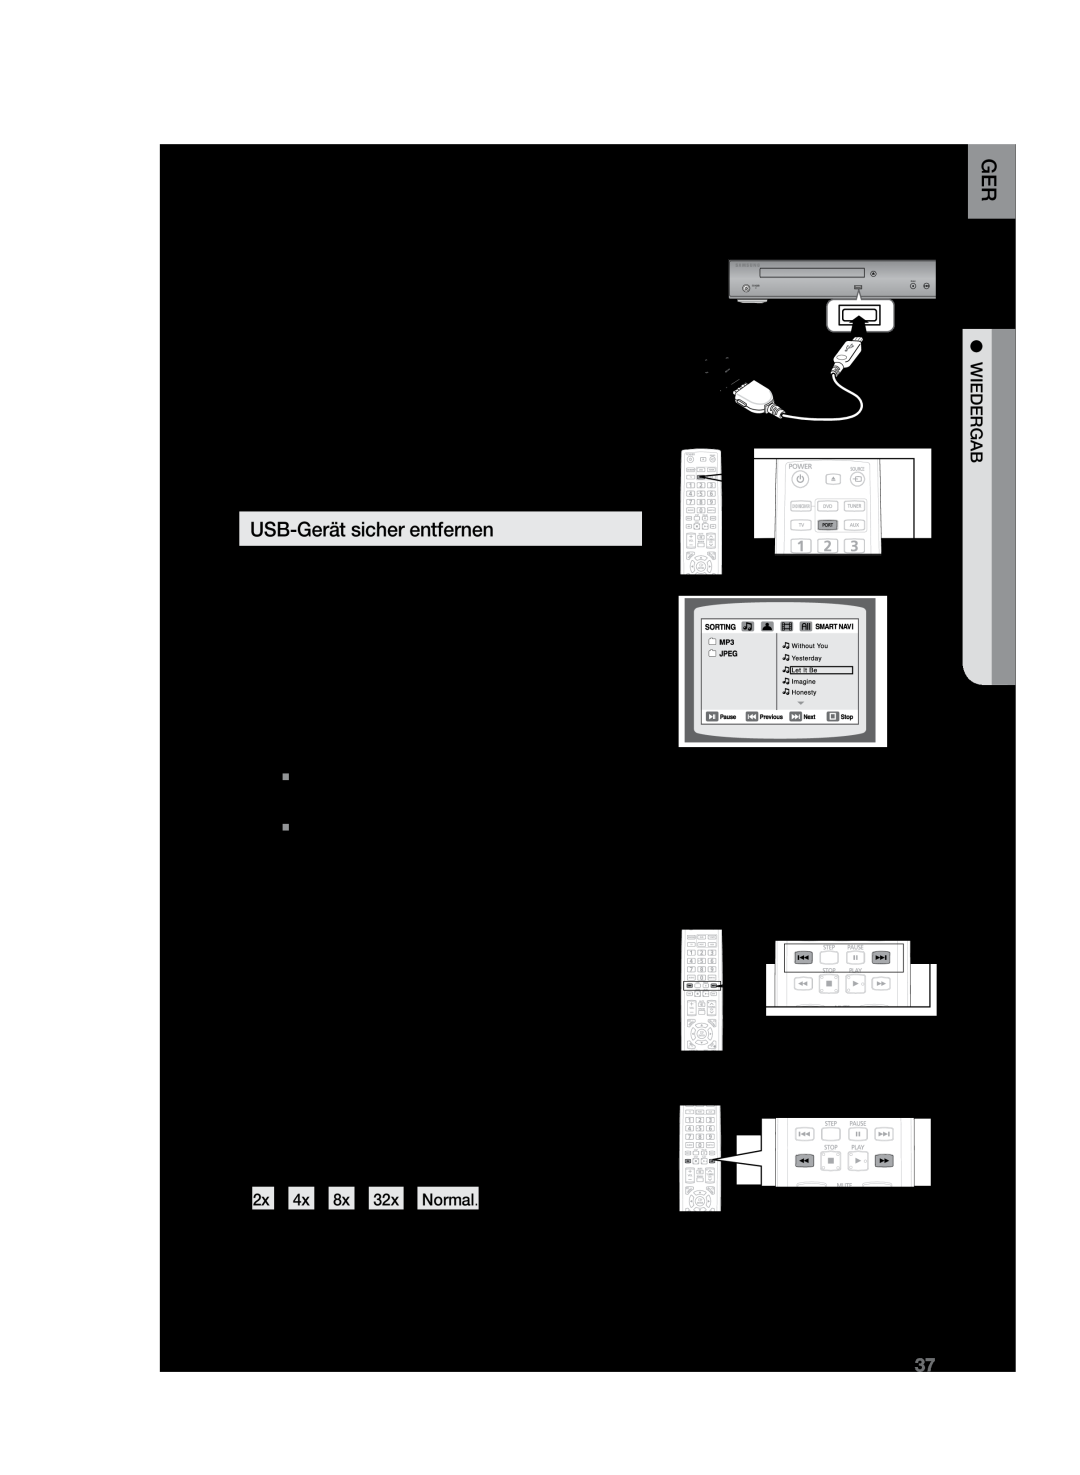 Samsung HT-Z120T/XEF manual Wiedergabe von Media-Dateien über die Funktion USB-Host, Zeitraffer, USB-Gerät sicher entfernen 